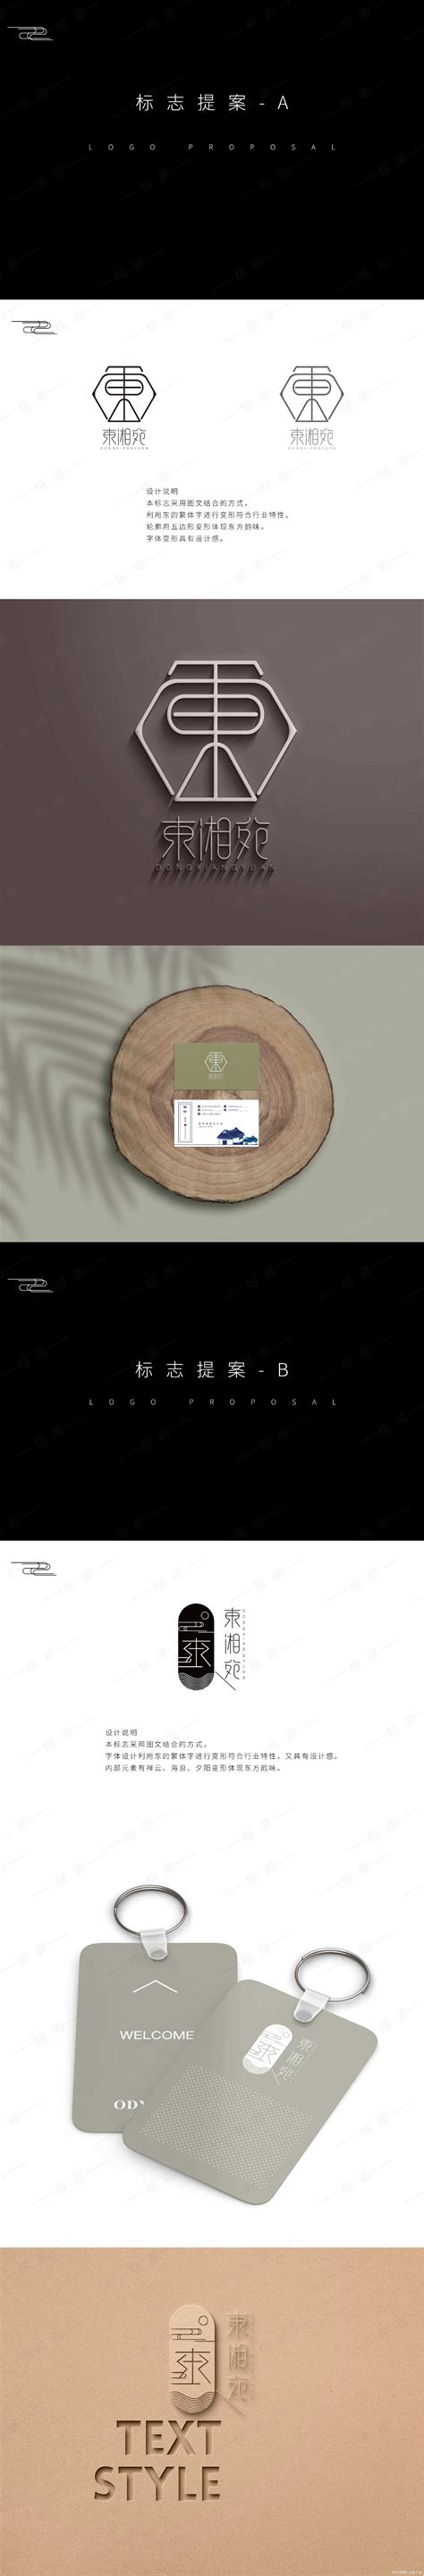 东湘宛logo设计提案LOGO设计作品-设计人才灵活用工-设计DNA